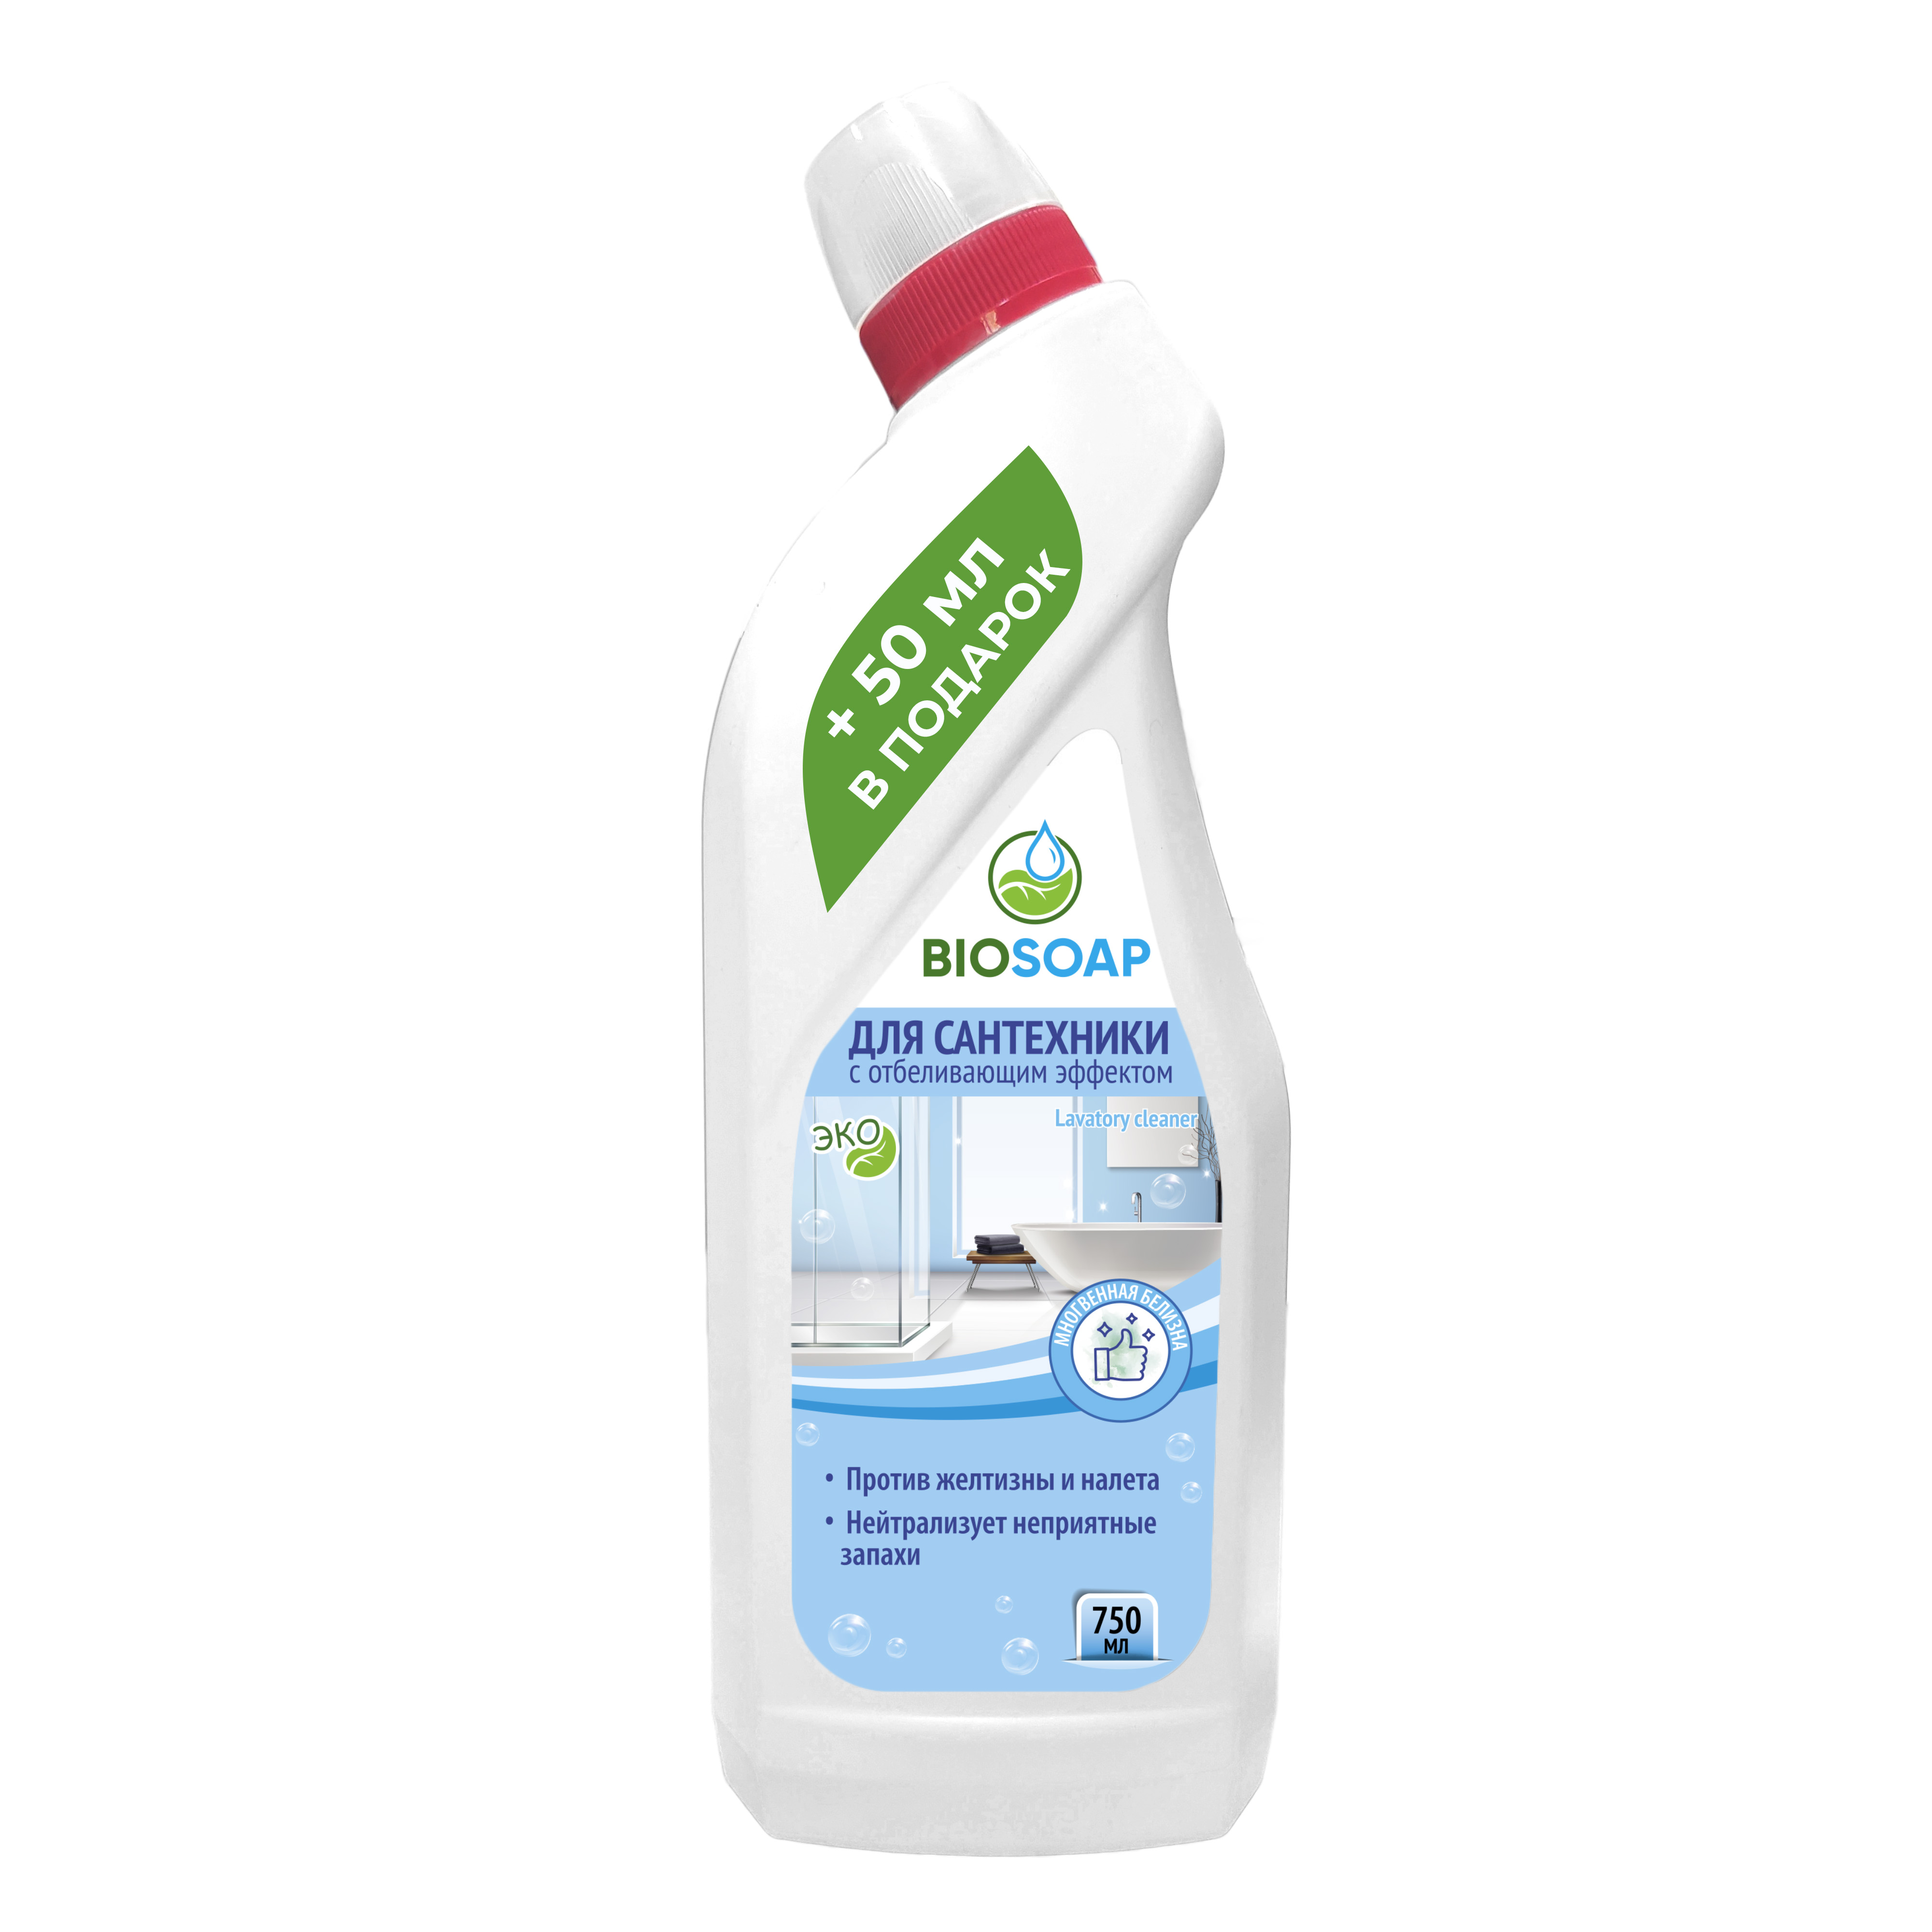 Средство для сантехники Biosoap с отбеливающим эффектом 750 мл biosoap biosoap средство для очистки и полировки мебели furniture polish